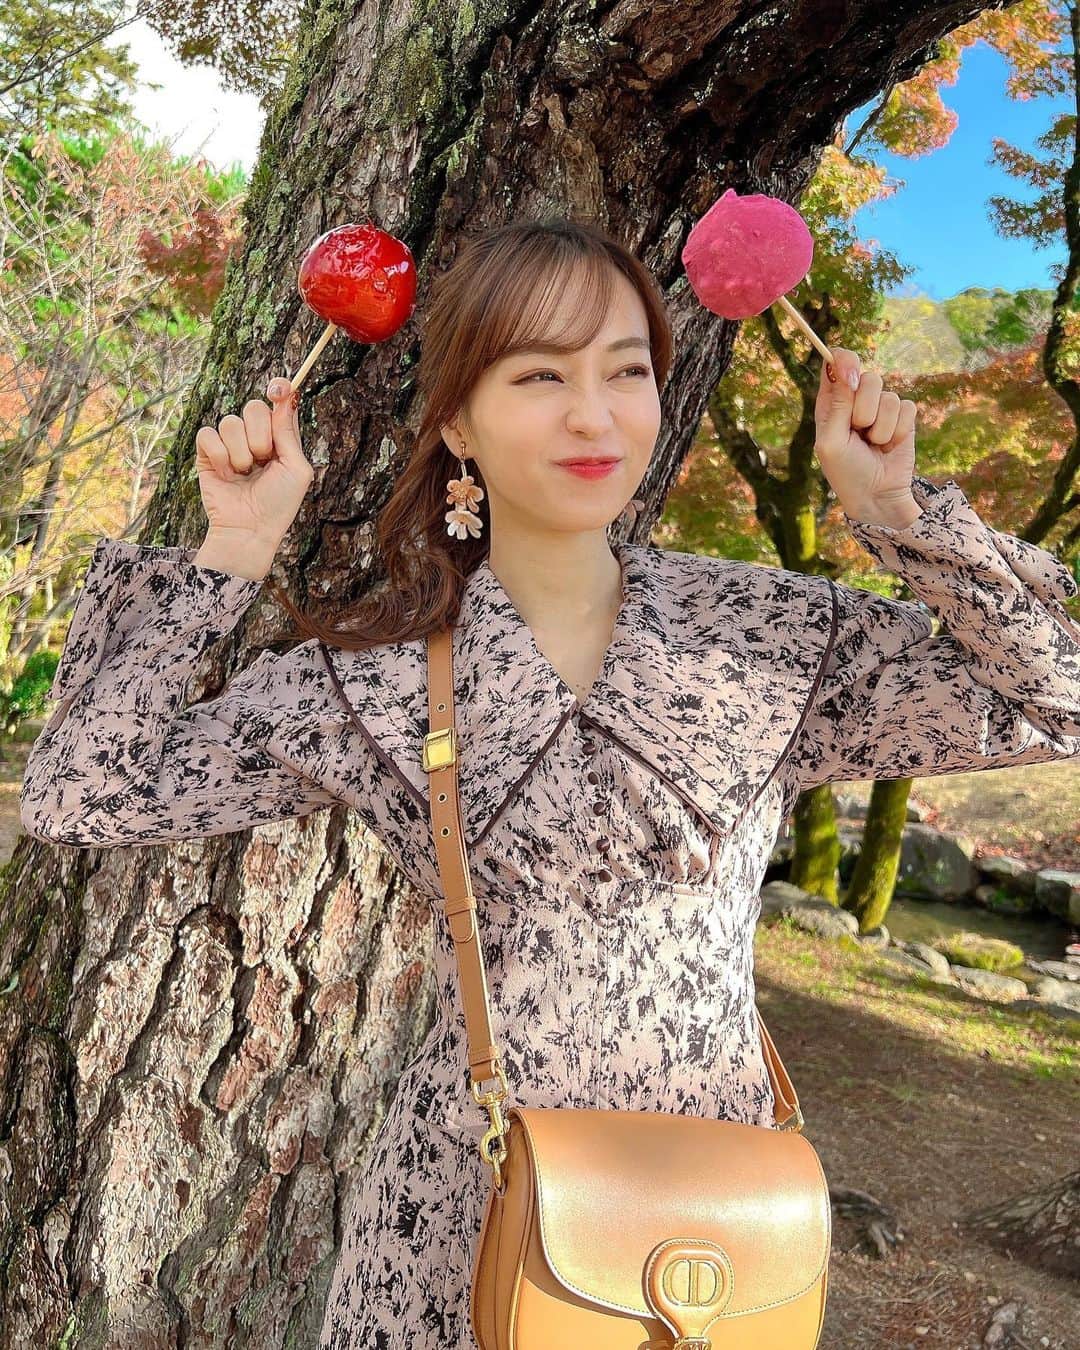 みき みーやんのインスタグラム：「リンゴアメ専門店🍎林檎堂🍎京都高台寺店 @kyoto_ringodou . 京都の食べ歩きに最適なスイーツみーつけた❤ . ここのリンゴはその時期の美味しい林檎だけを使っていて 『きいろ』のみ青りんごで作ってるんやってー😍💕 . まるまま持ち帰ってもいいし その場でカットしてもらって 食べ歩きで食べてもよし❤ . 味は8種類もあるからどれにするか選ぶのも楽しい🤣❤ . . 甘くて瑞々しくてシャキシャキだったなぁー🤤 甘ーいスイーツ食べたい方はぜひ😍 . . 🍎林檎堂　京都高台寺南門通店 📍京都市東山区南町415-6 . #PR #林檎堂 #林檎飴#りんご飴#京都#高台寺  #八阪神社 #京都食べ歩き#京都スイーツ巡り #京都スイーツ #京都散策#清水寺 #京都旅行#京都観光#京都紅葉#そうだ京都行こう#京都旅行 #京都グルメ#京都歩き#applecandy#kyotojapan#Kyototravel#kyototrip#japanesegirl #自撮り女子#グルメ女子#snidel #スナイデル」